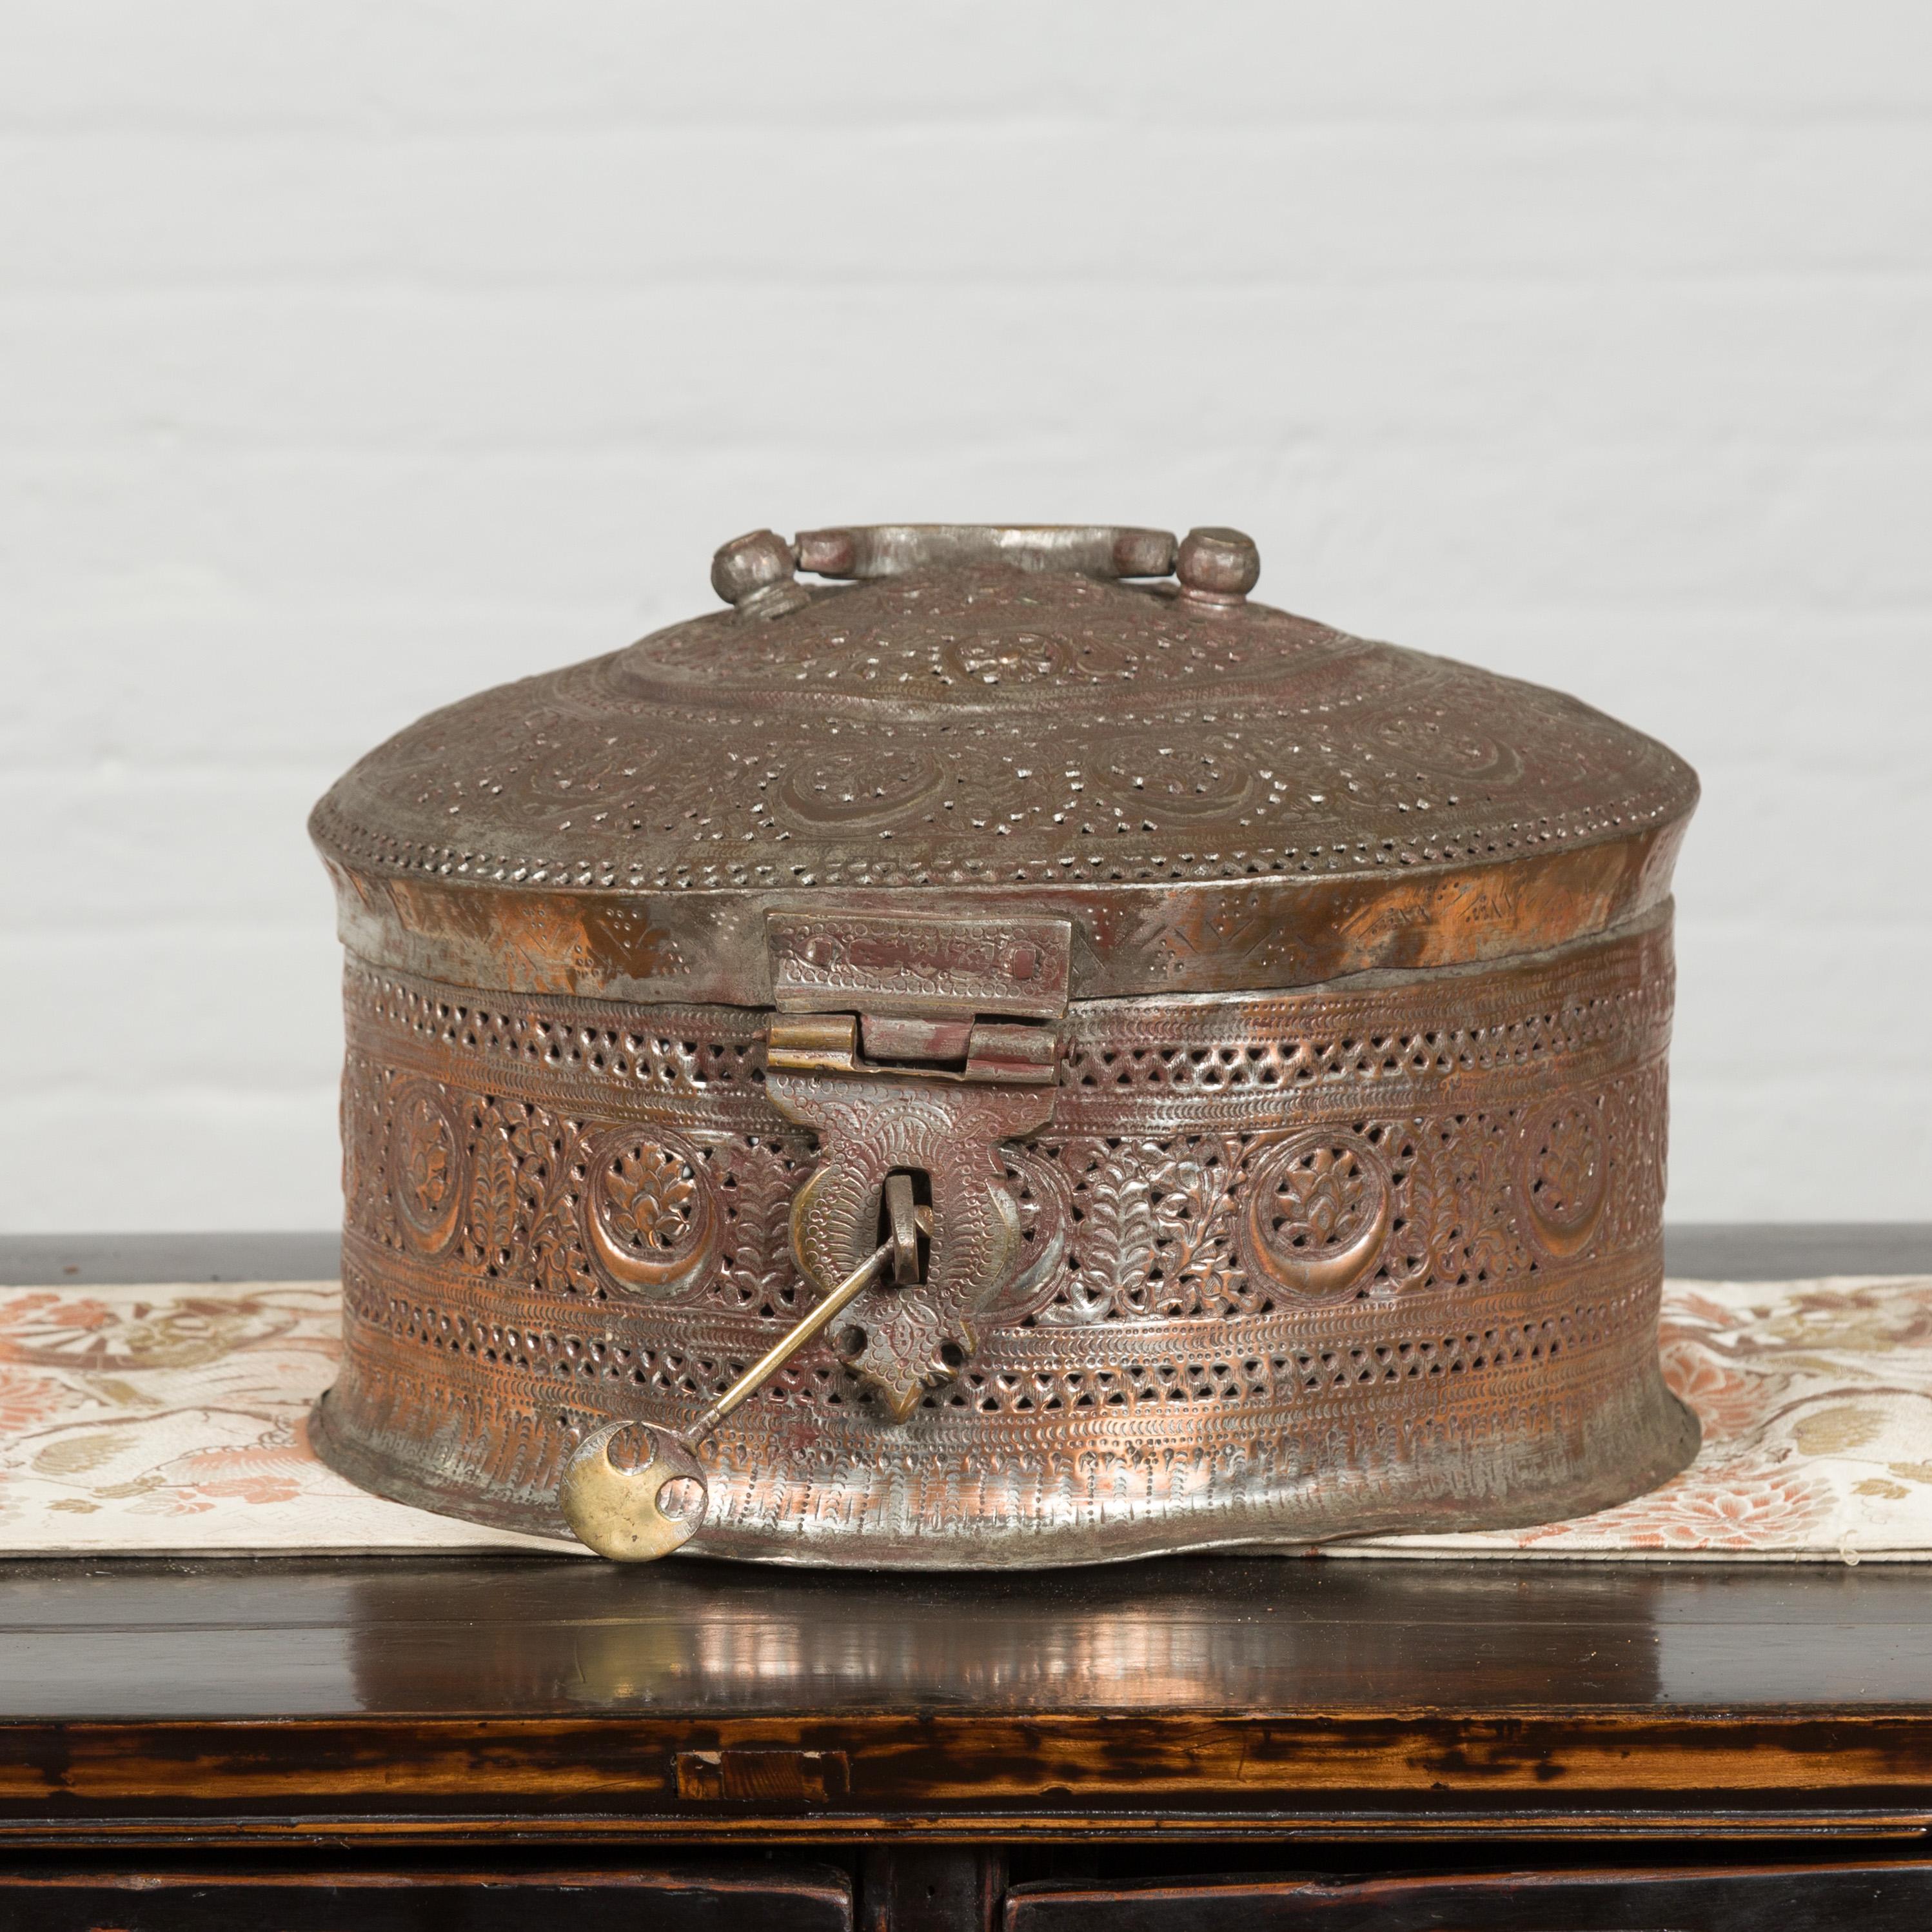 Une boîte indienne en métal argenté du 19ème siècle avec des motifs de feuillage percés. Créée en Inde au XIXe siècle, cette boîte en métal argenté attire notre attention par son corps circulaire percé orné d'une abondance de motifs de feuillage.